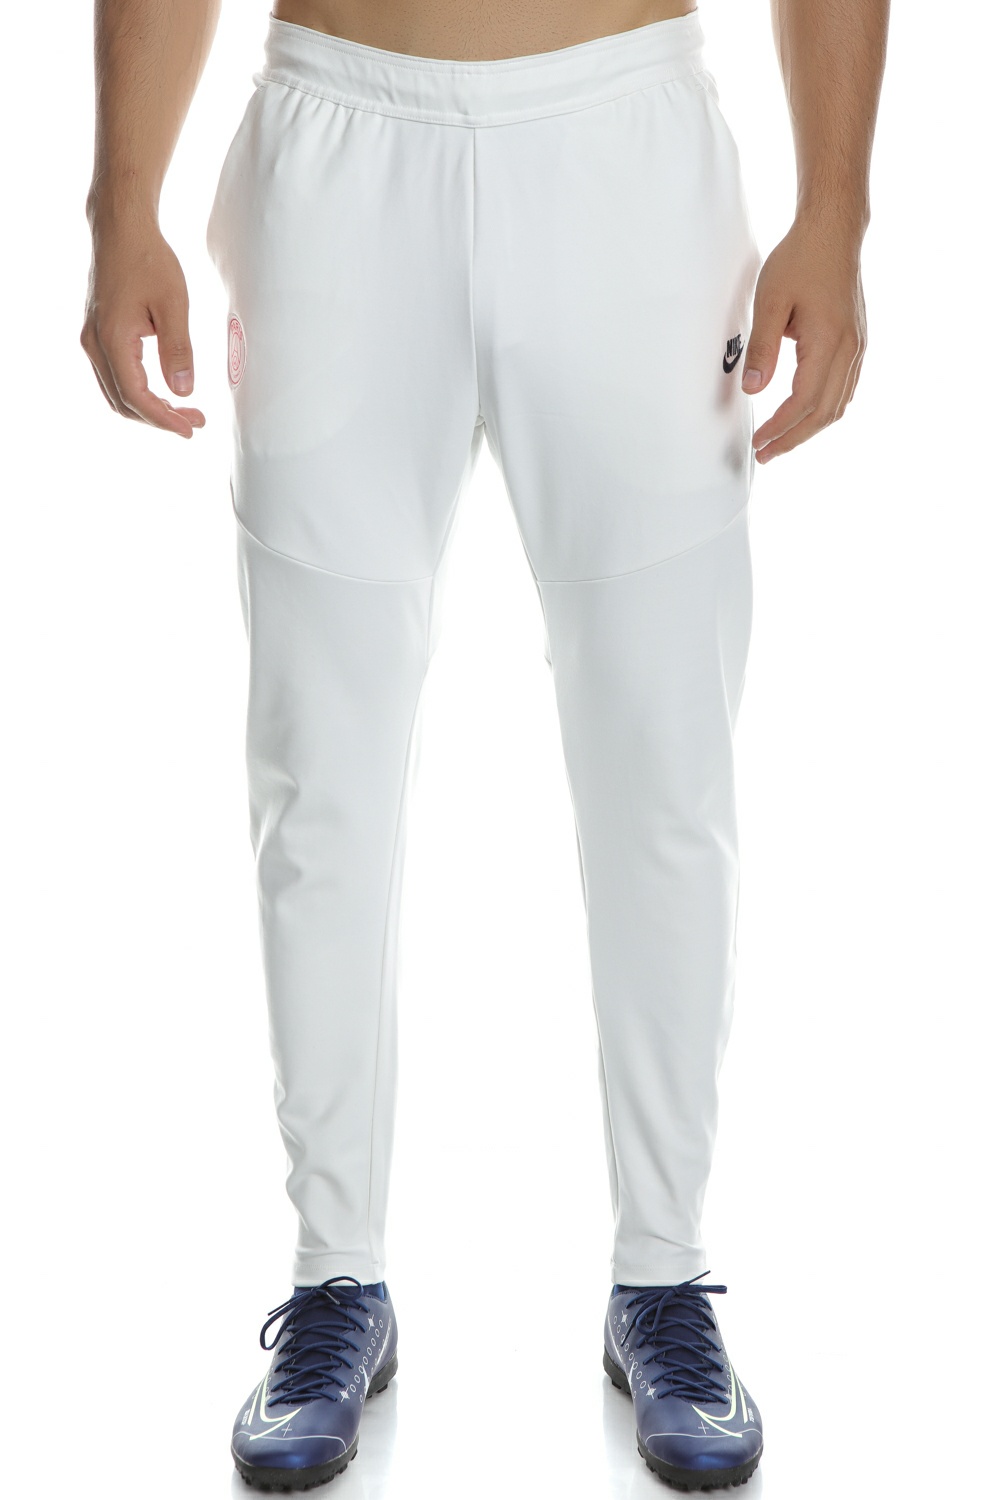 Ανδρικά/Ρούχα/Αθλητικά/Φόρμες NIKE - Ανδρικό παντελόνι φόρμας NIKE PSG MNSW TCH PCK λευκό